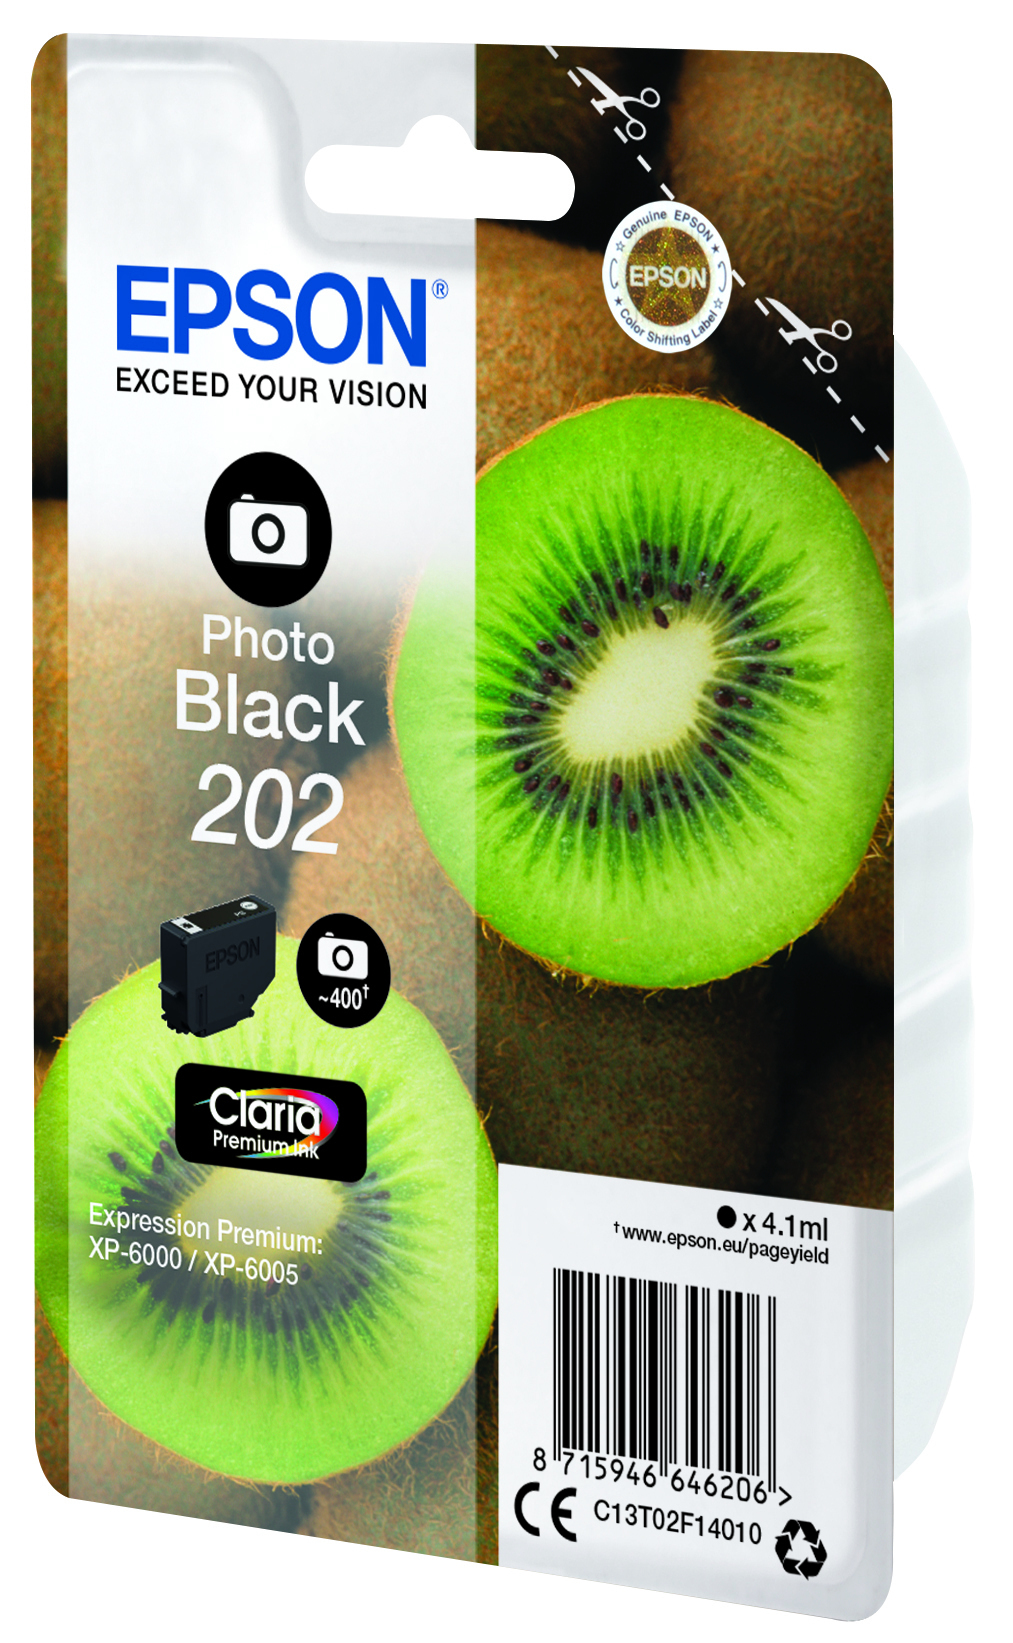 Epson Kiwi Singlepack Photo Black 202 Claria Premium Ink - Standardertrag - Tinte auf Farbstoffbasis - 4,1 ml - 400 Seiten - 1 Stück(e)